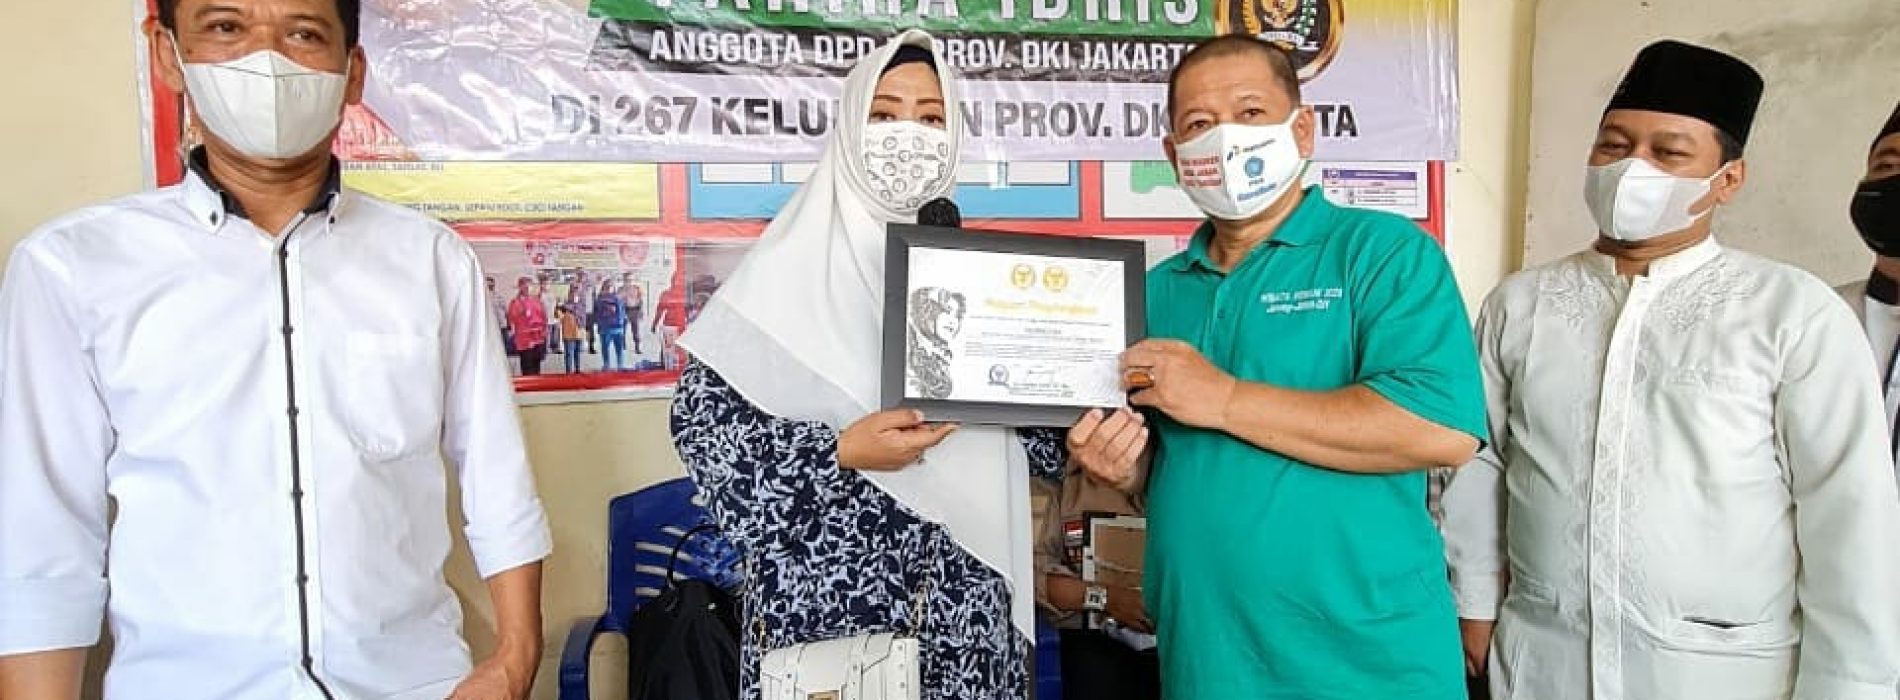 Wujud Apresiasi, Fahira Idris berikan Piagam Penghargaan Penanganan Covid-19 Kepada Gugus Tugas di Kelurahan Pejaten Timur, Pasar Minggu Jakarta Selatan